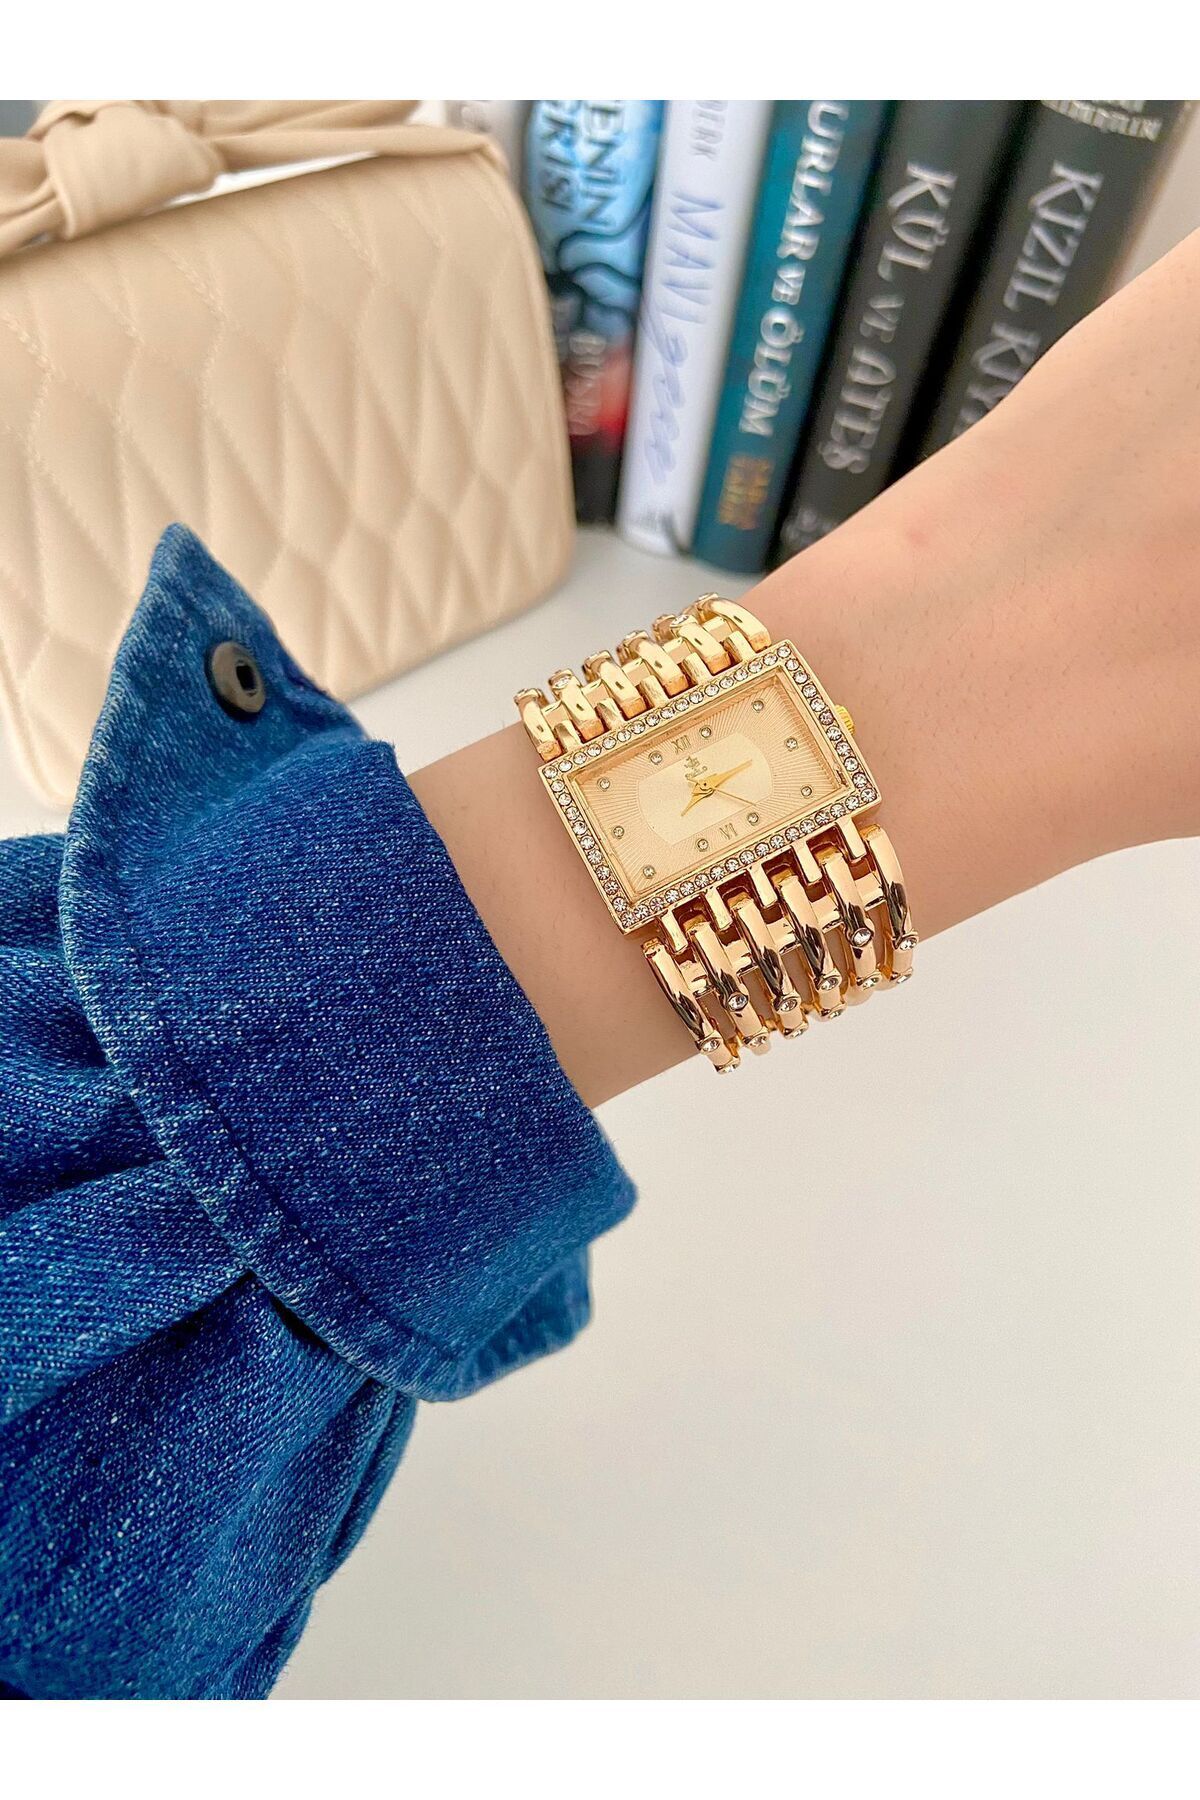 Arzu Butik Kadın kol saati metal kordon gold renk taşlı kelepçe kaburga model